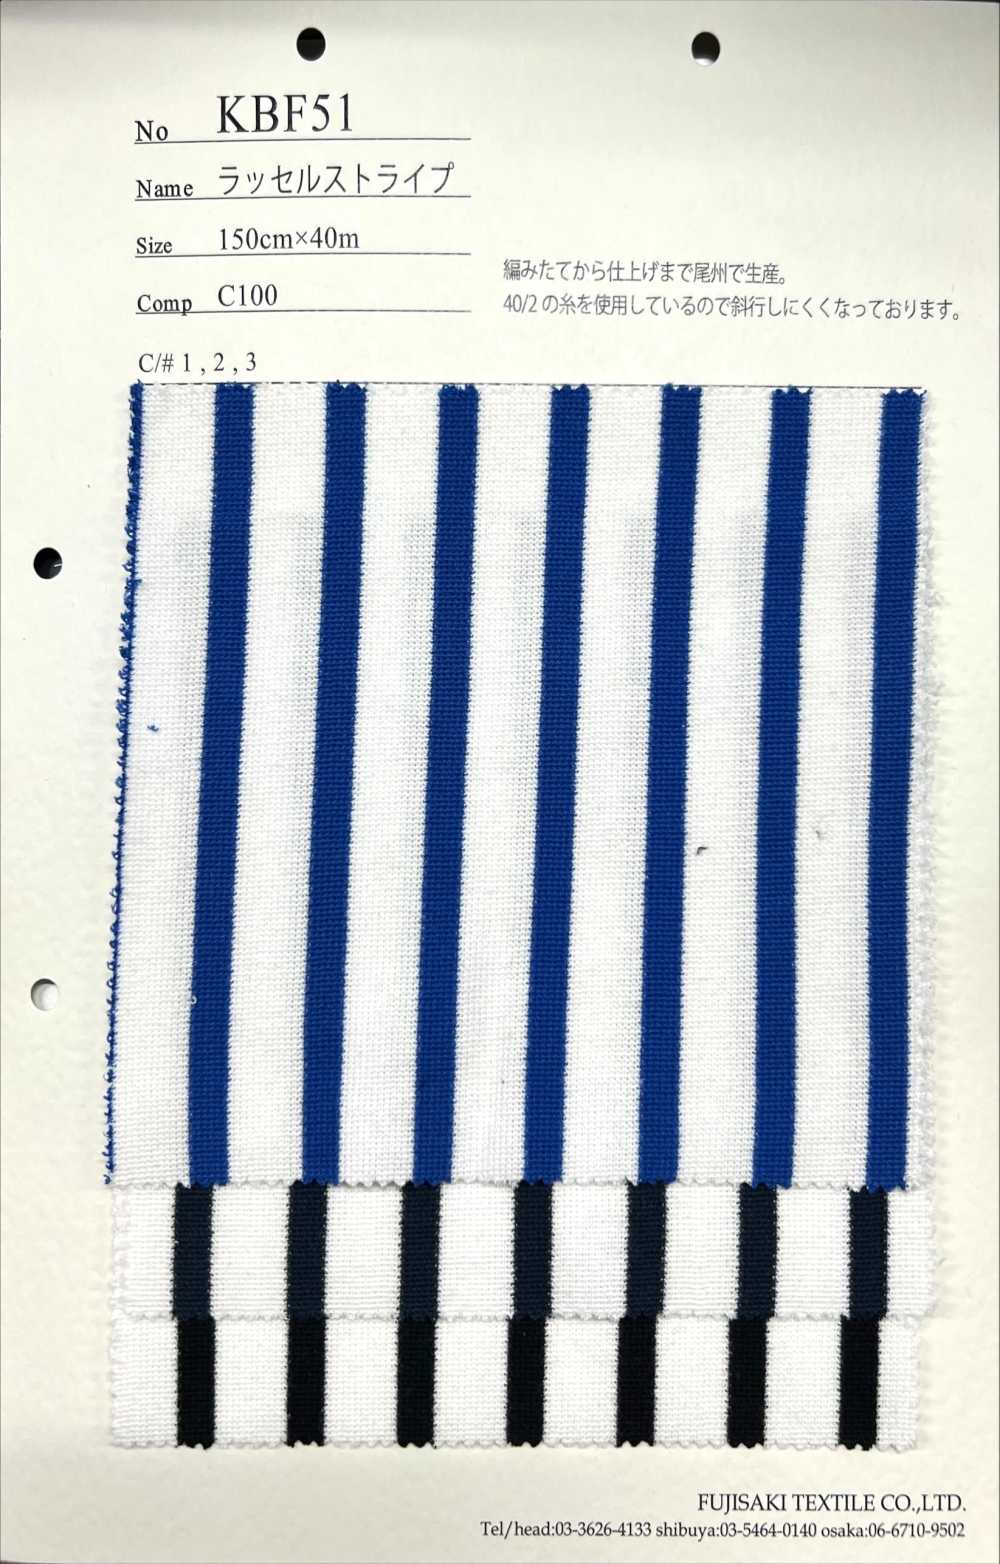 KBF51 Raschelstreifen[Textilgewebe] Fujisaki Textile